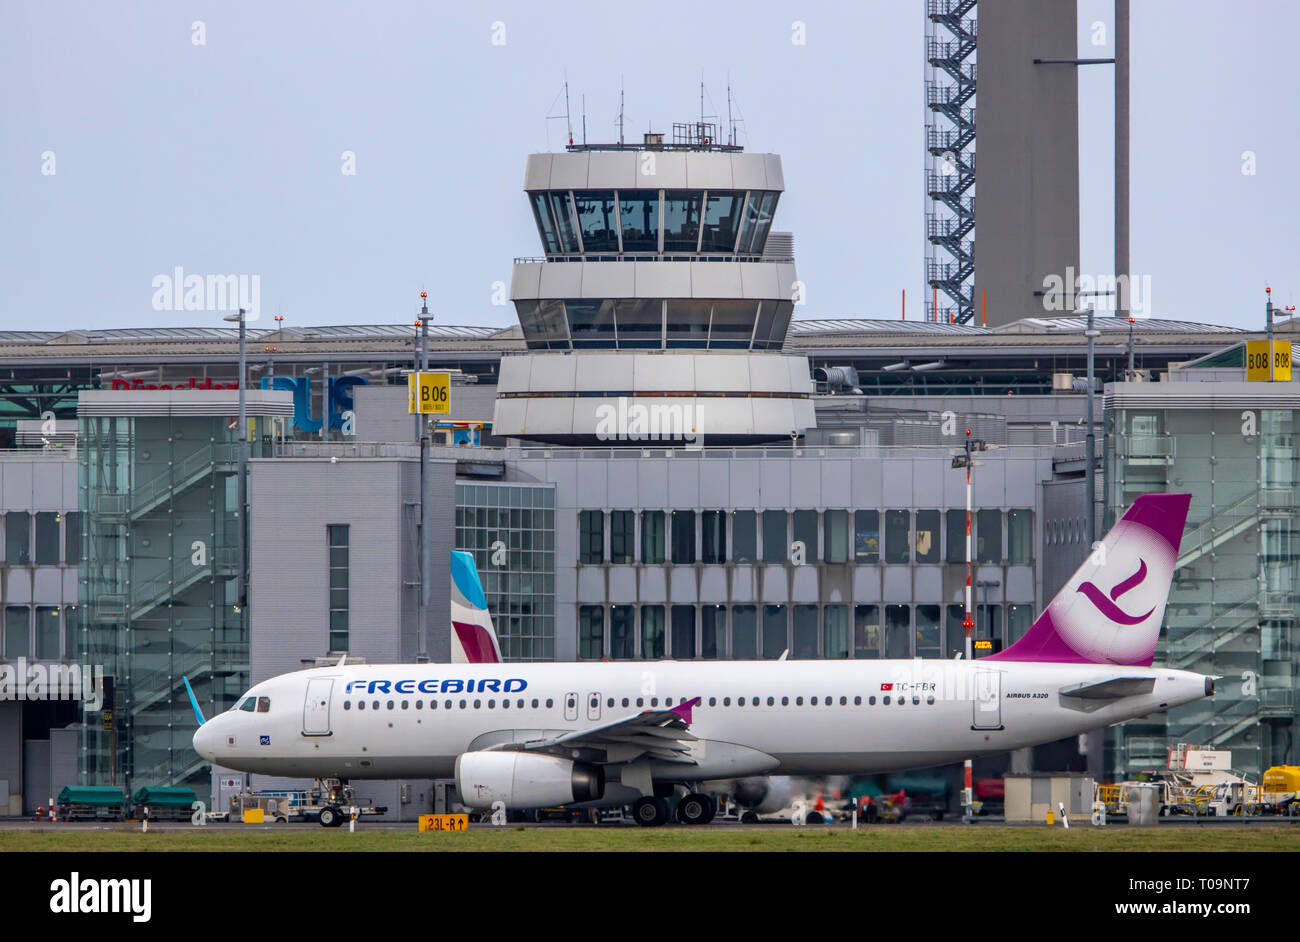 El Aeropuerto Internacional de Dusseldorf, DHE, Freebird, Turquía, la Torre de Control del Tráfico Aéreo, Foto de stock